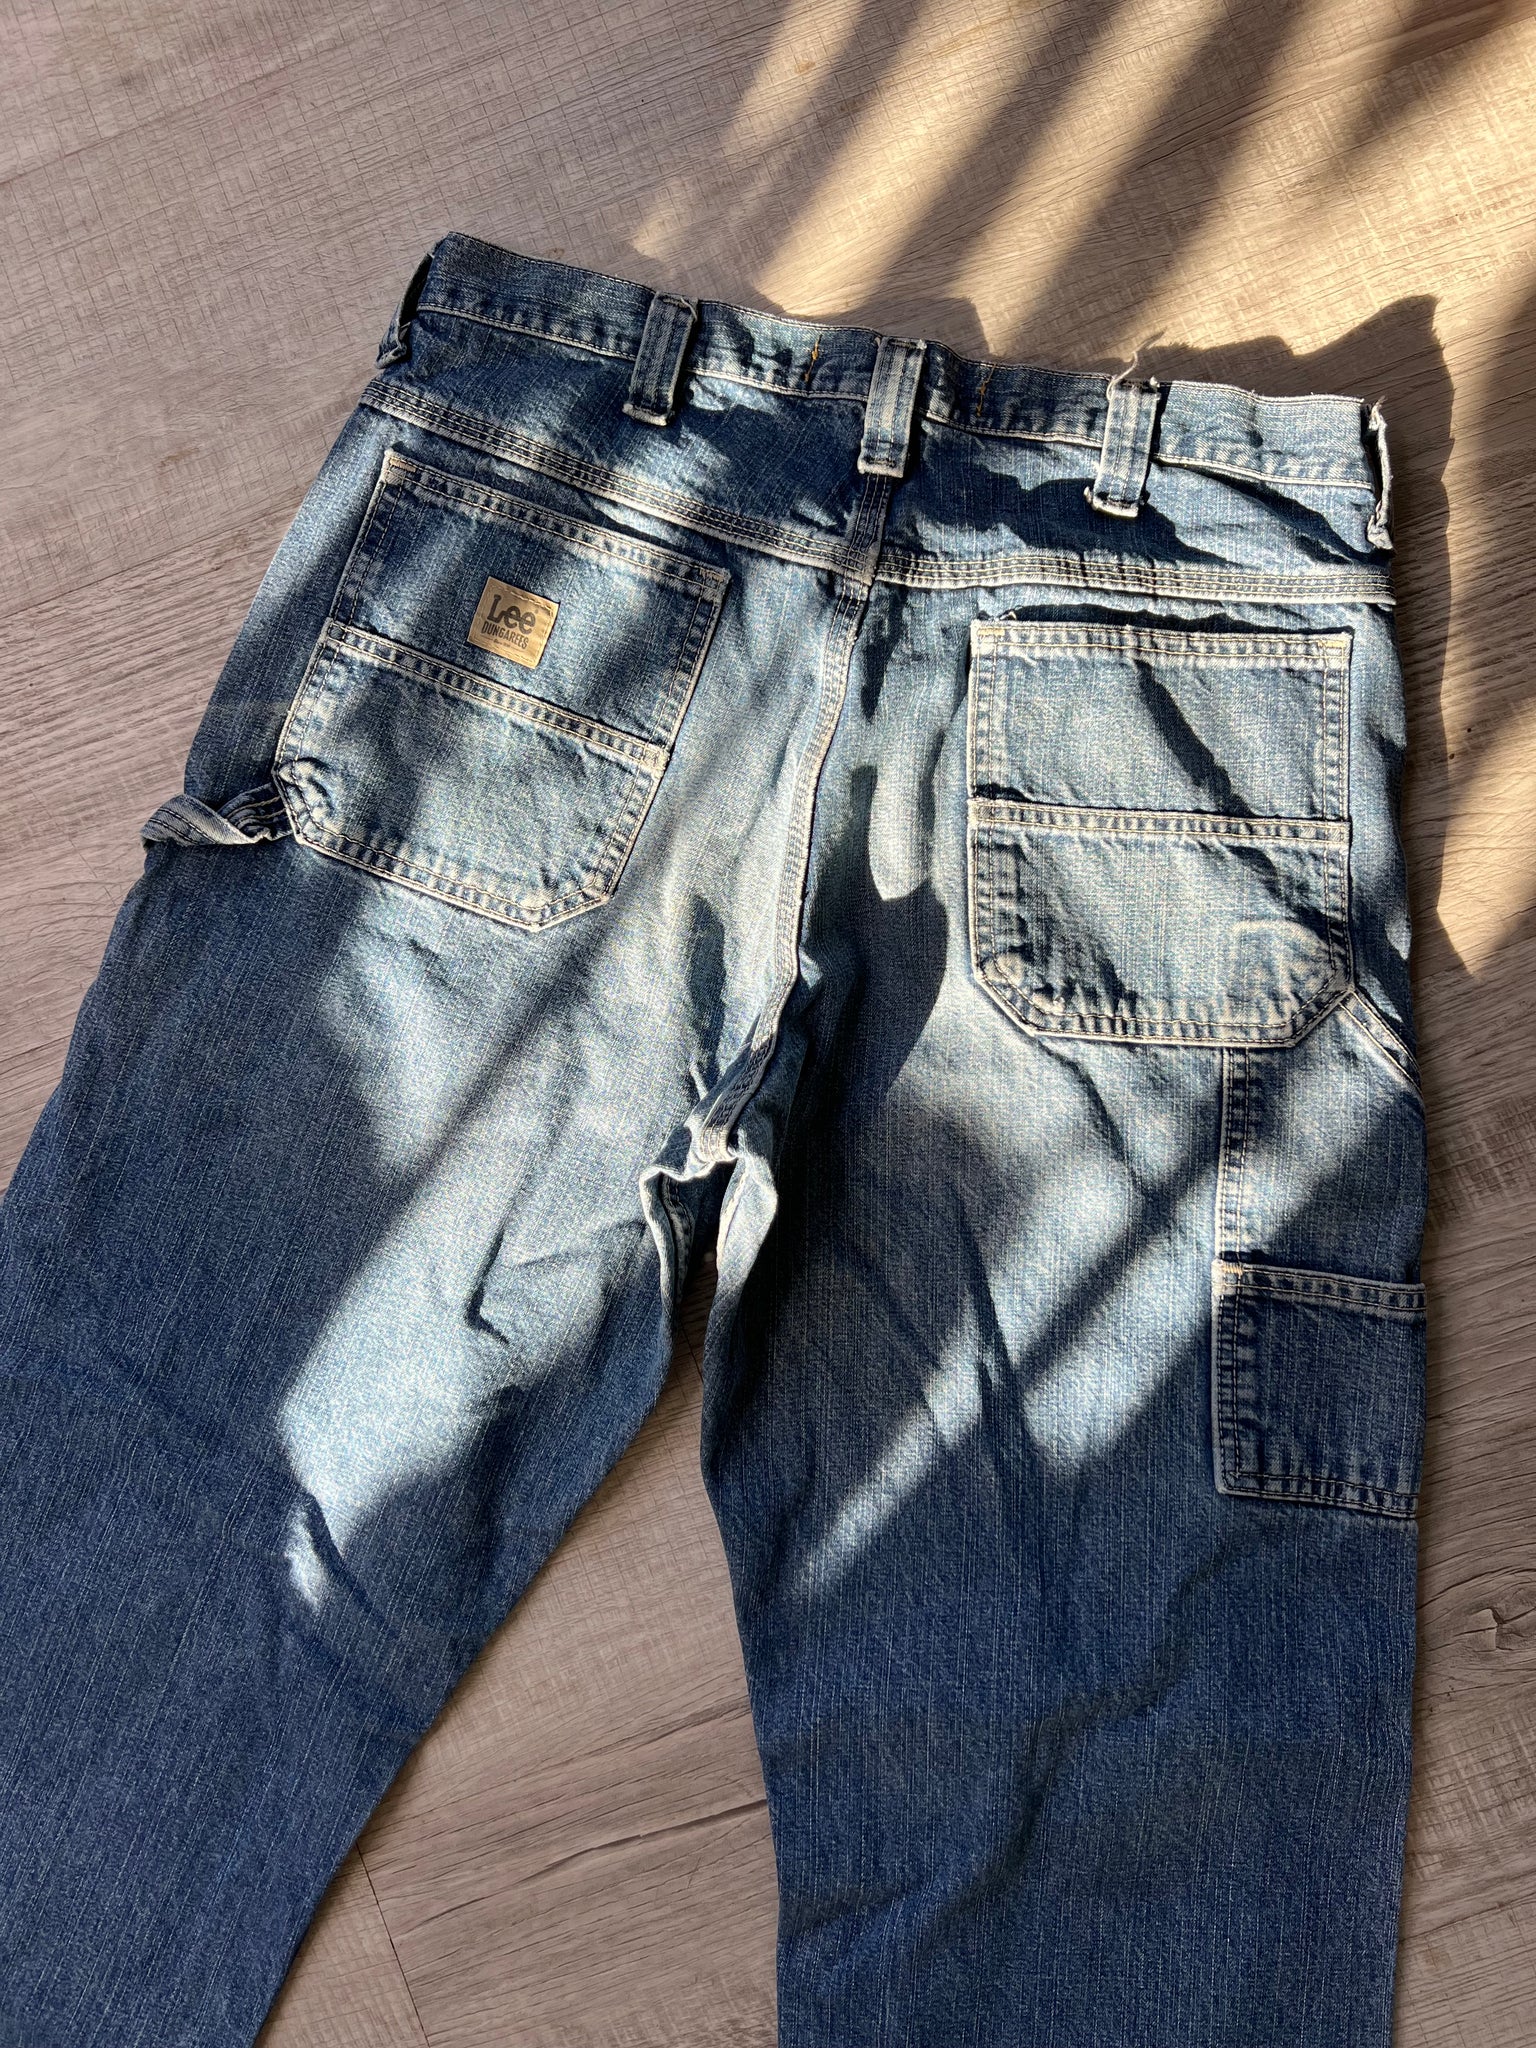 Carpenter Jeans - Dark Wash